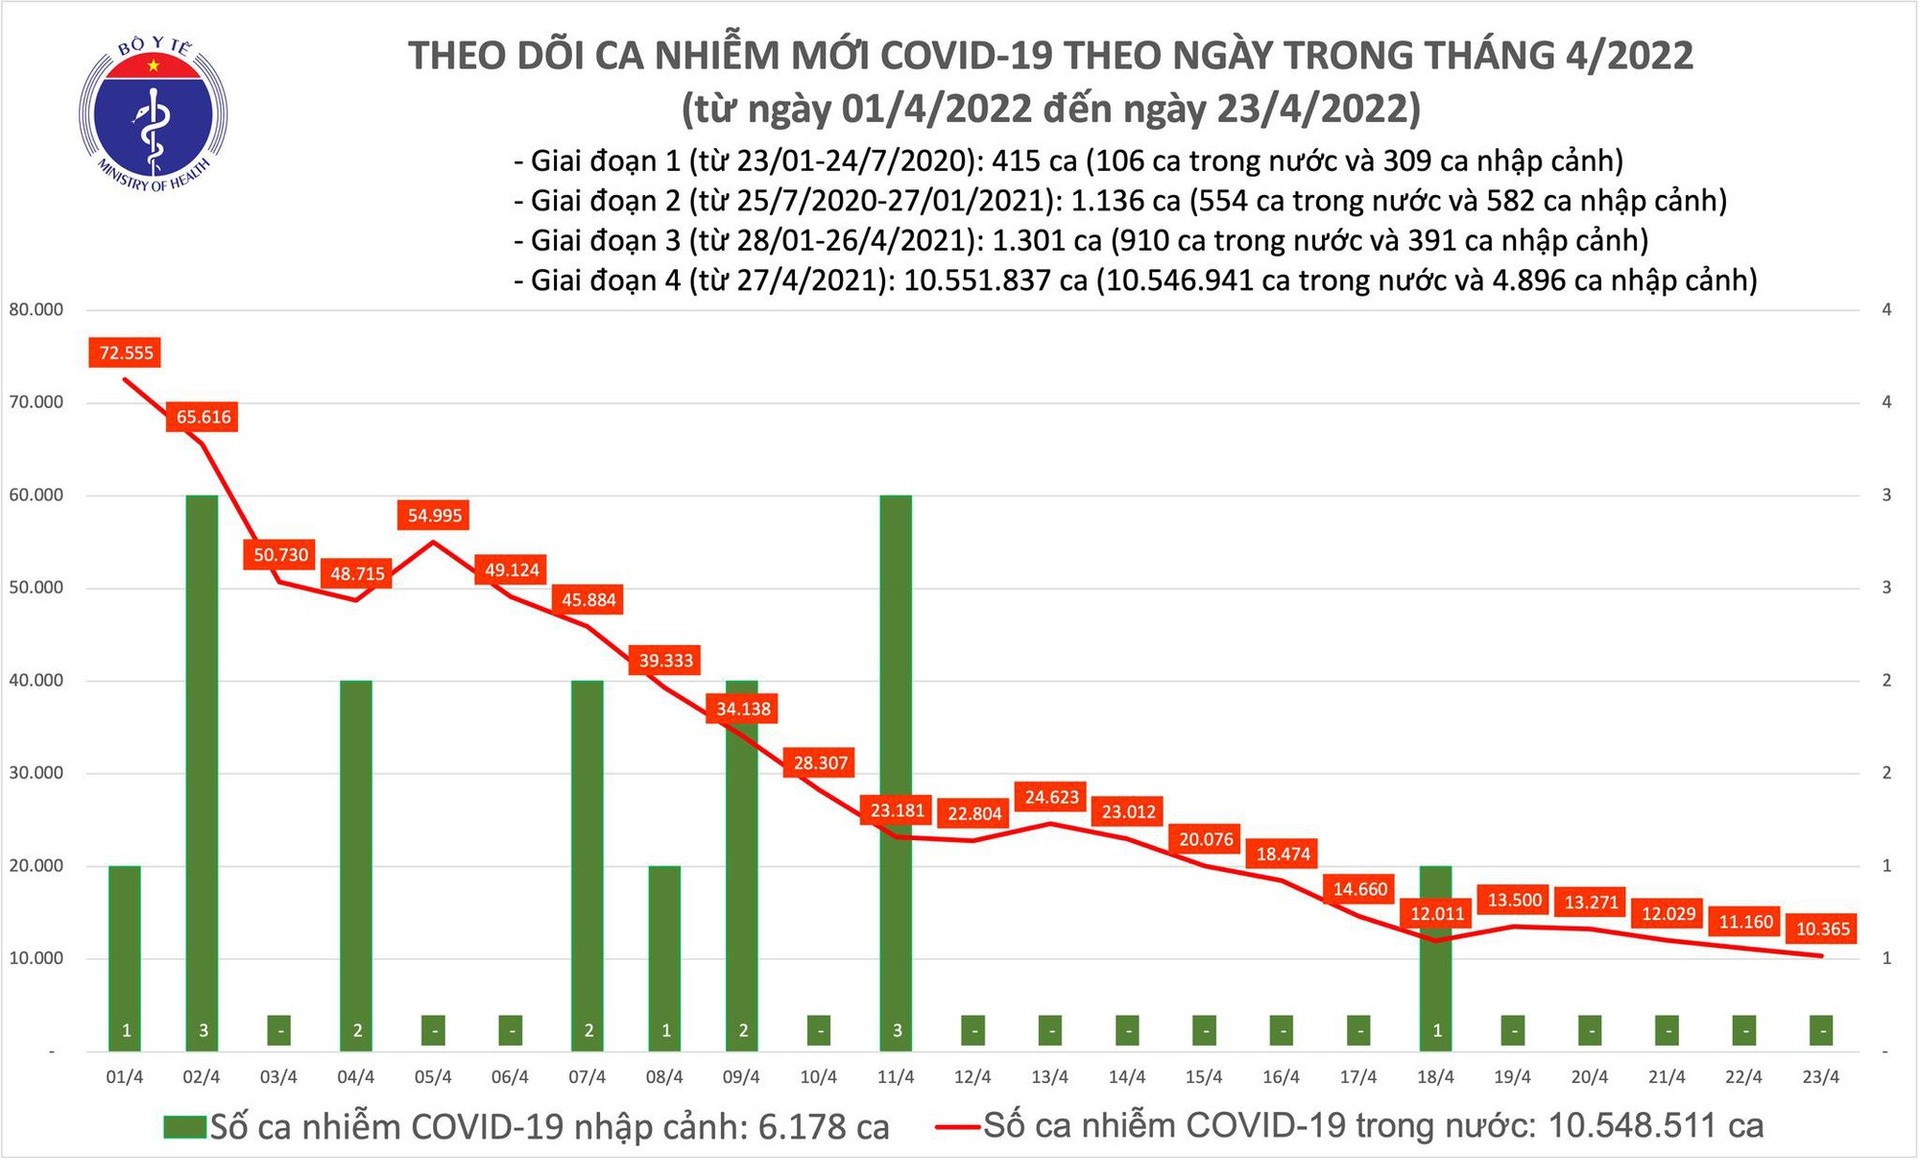 Ngày 23/4: Có 10.365 ca COVID-19 mới; ca tử vong giảm thấp nhất từ tháng 7/2021 đến nay - Ảnh 1.